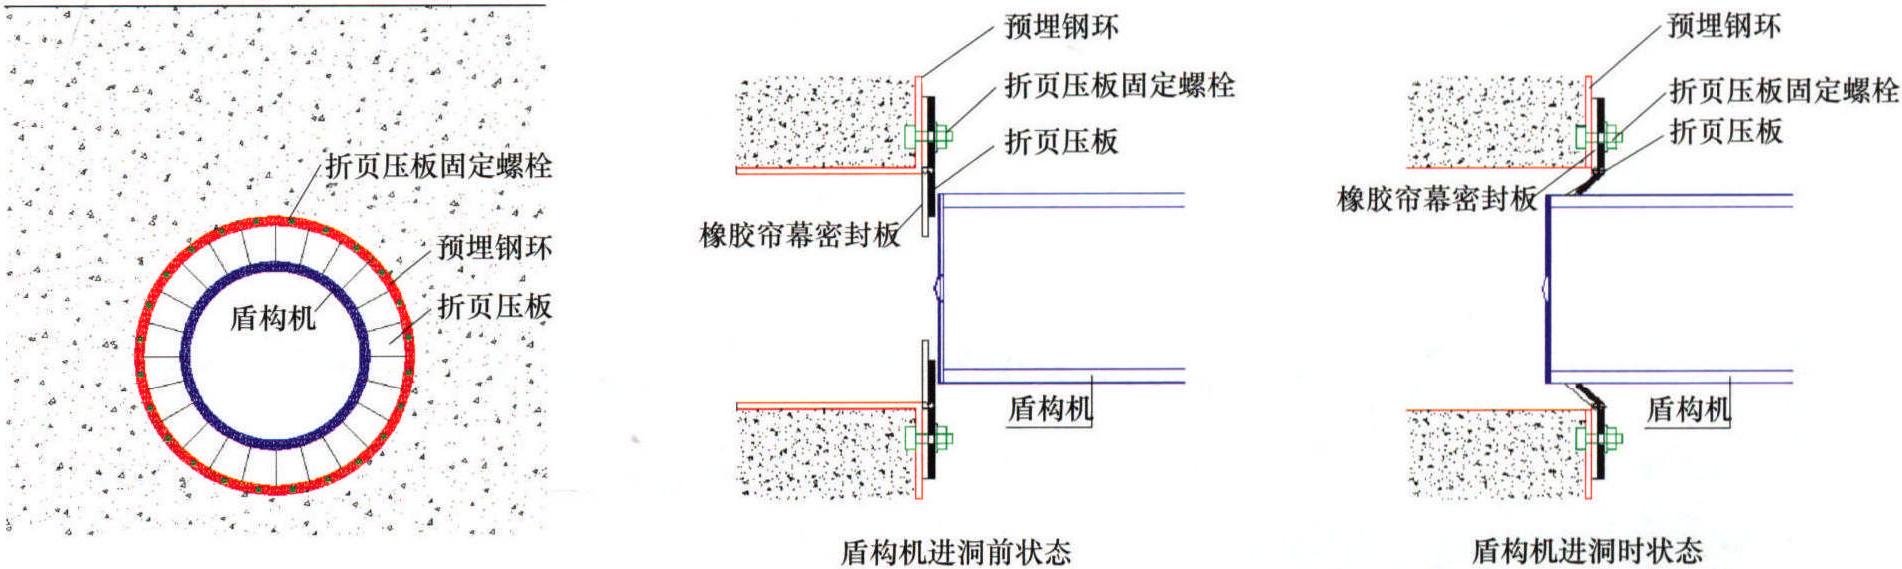 电力隧道盾构典型施工方法 GWGF001-2014-SD-DL